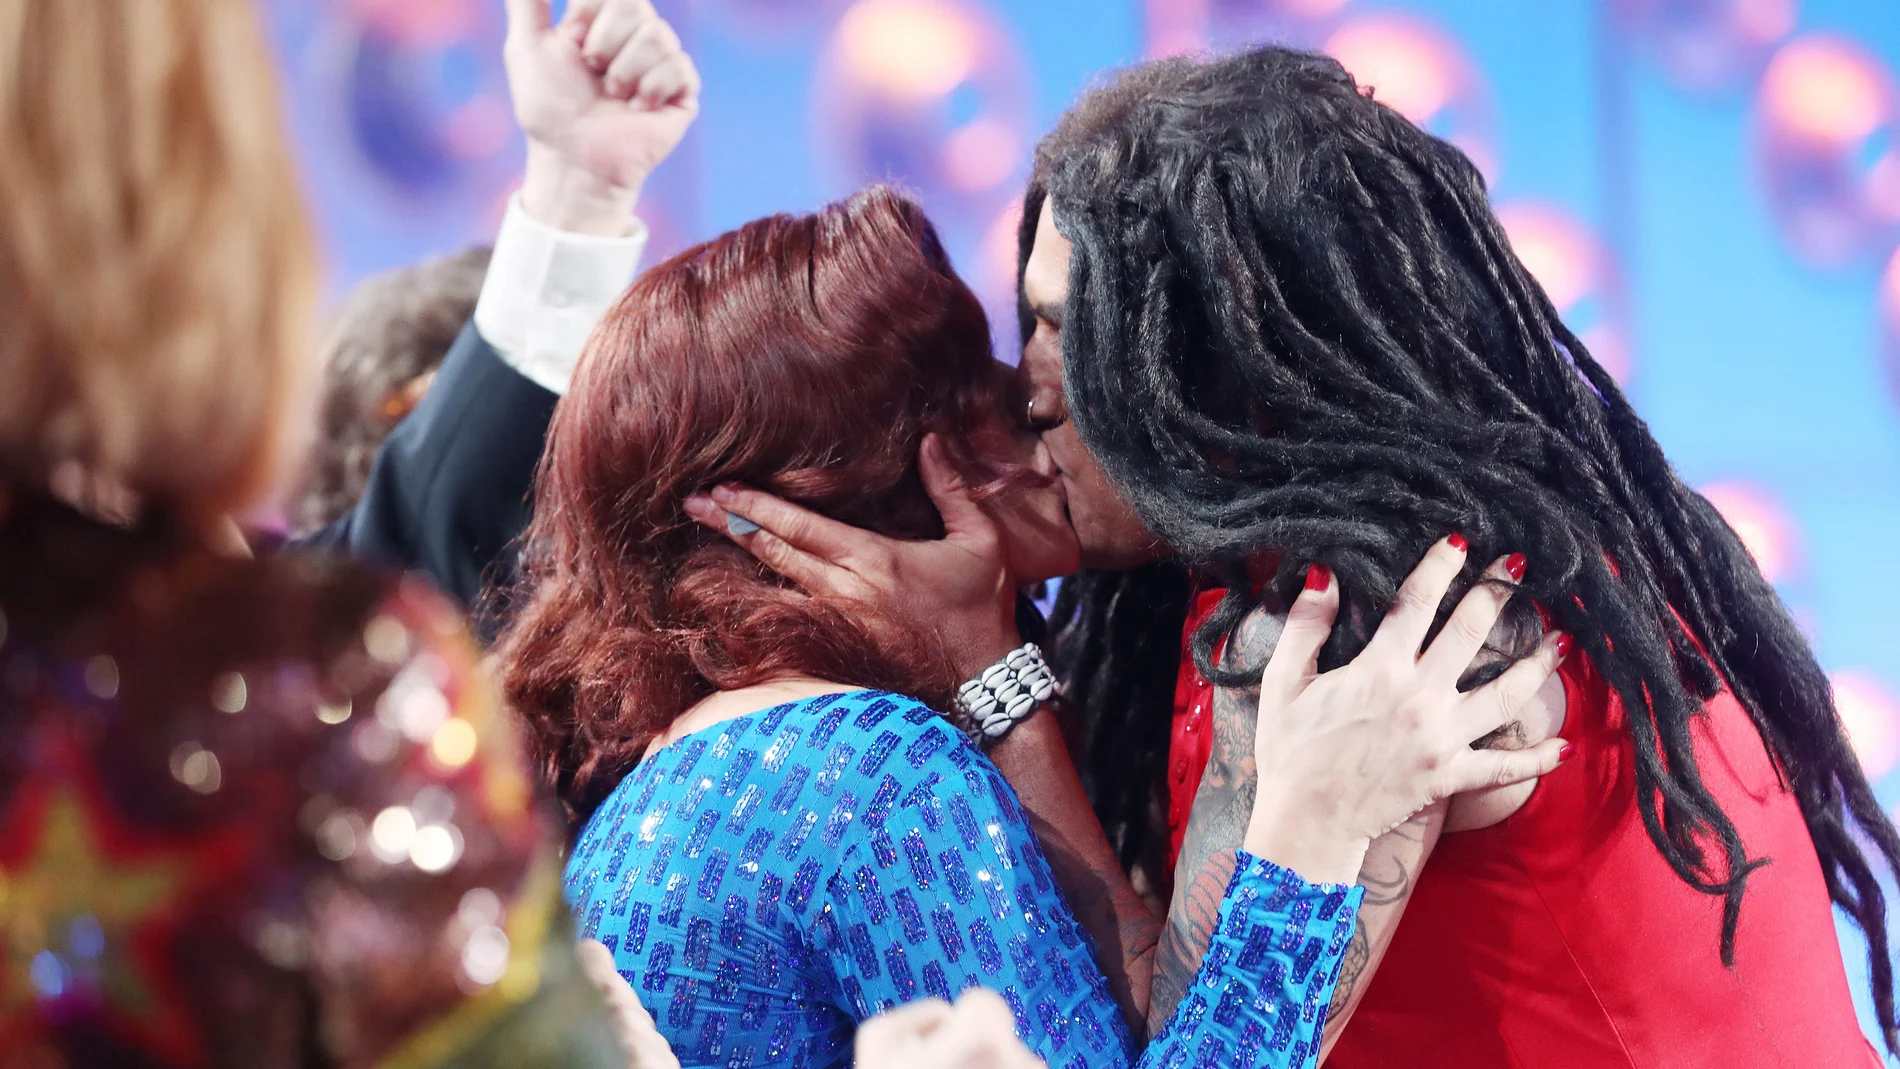 Rosa López sufre un 'déjà vu' cuando Lenny Kravitz le vuelve besa en los labios